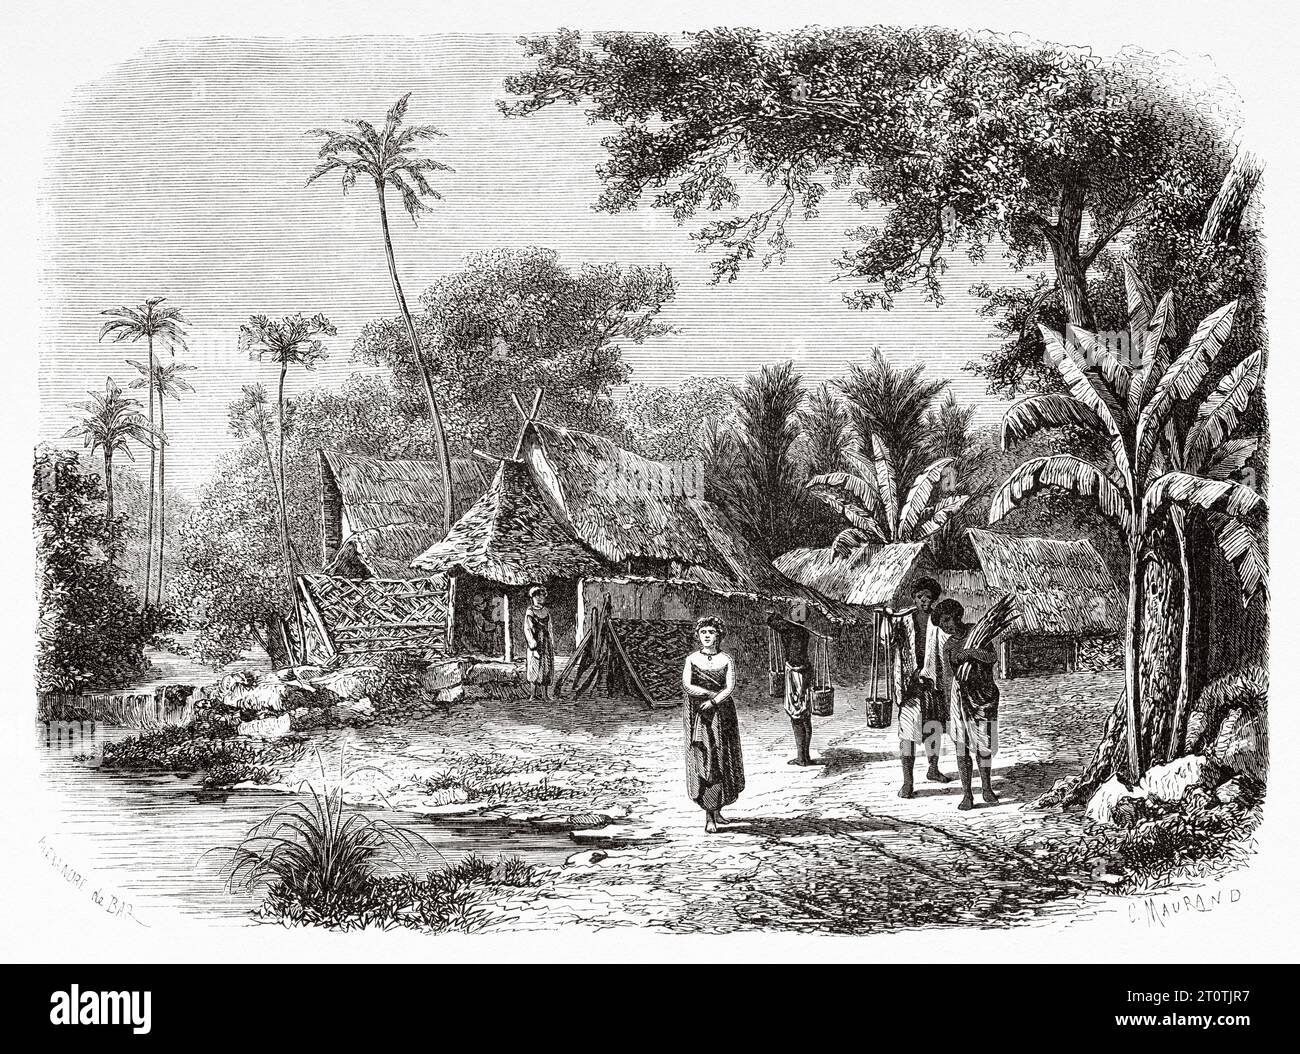 Landschaft eines Dorfes im Inneren der Insel Java, Indonesien. Südostasien. Alter Stich aus dem 19. Jahrhundert aus Le Tour du Monde 1860 Stockfoto